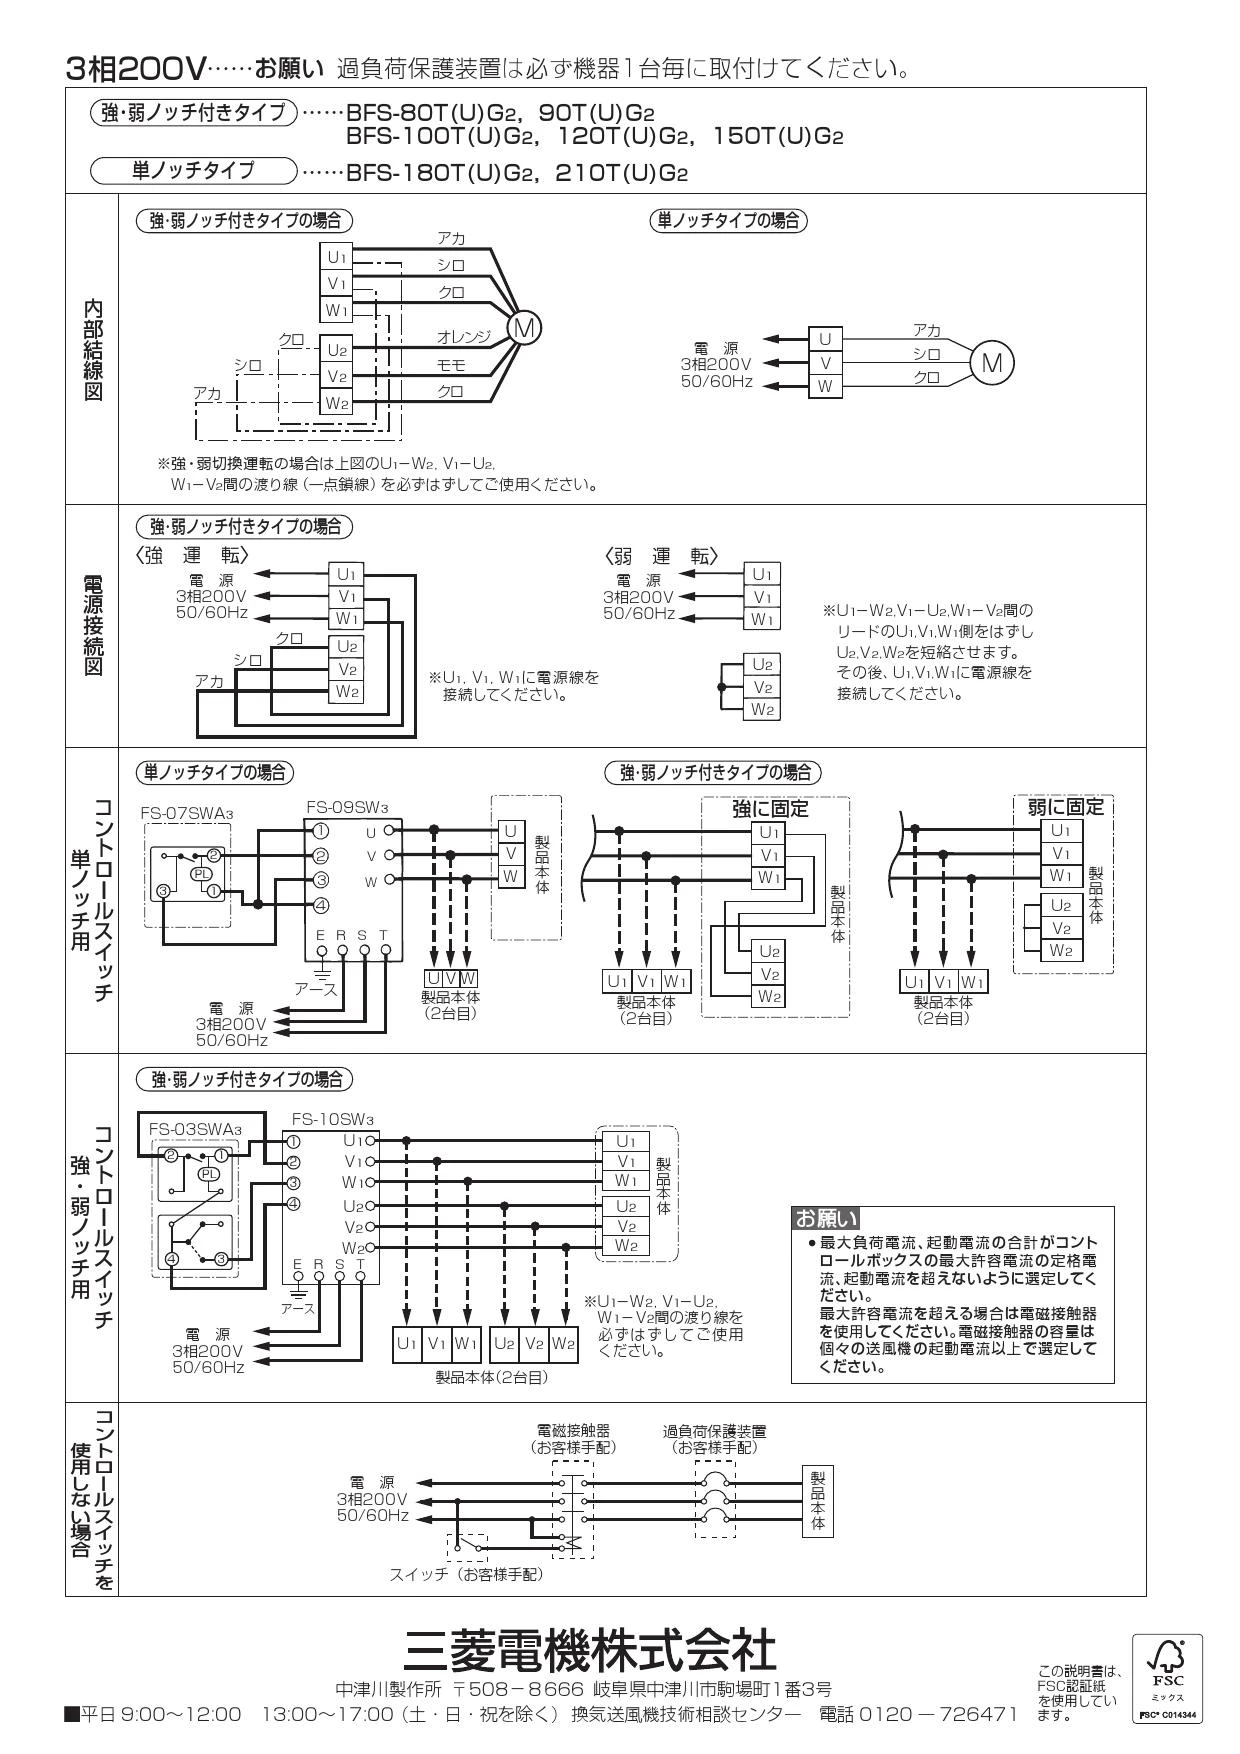 三菱電機 BFS-100TUG2 取扱説明書 施工説明書 納入仕様図|三菱電機 